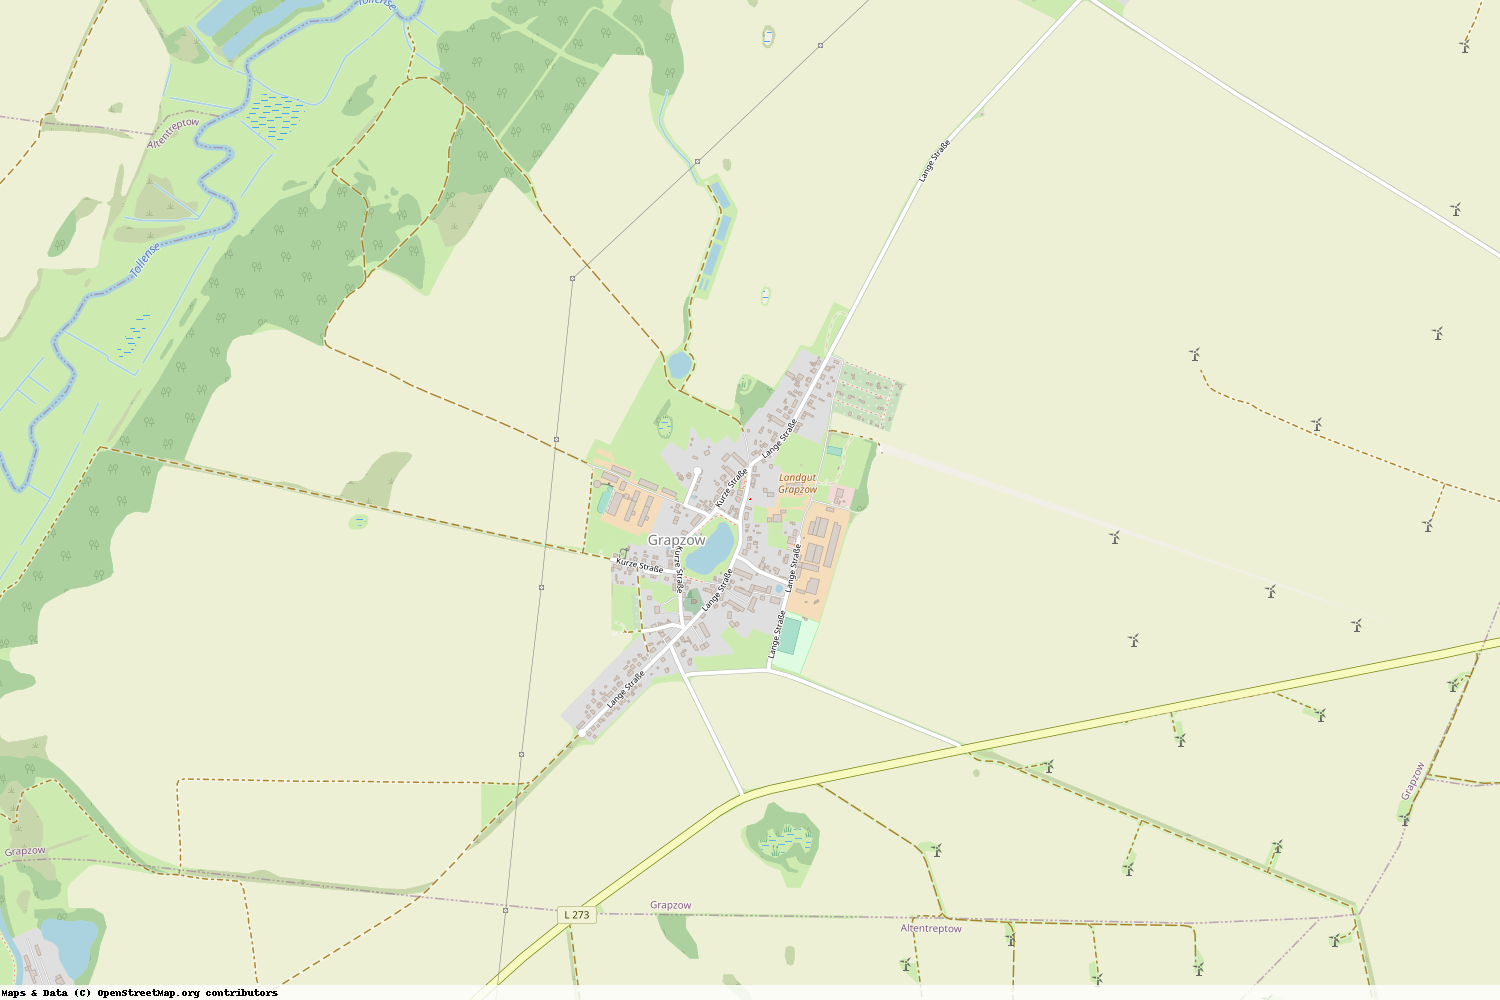 Ist gerade Stromausfall in Mecklenburg-Vorpommern - Mecklenburgische Seenplatte - Grapzow?